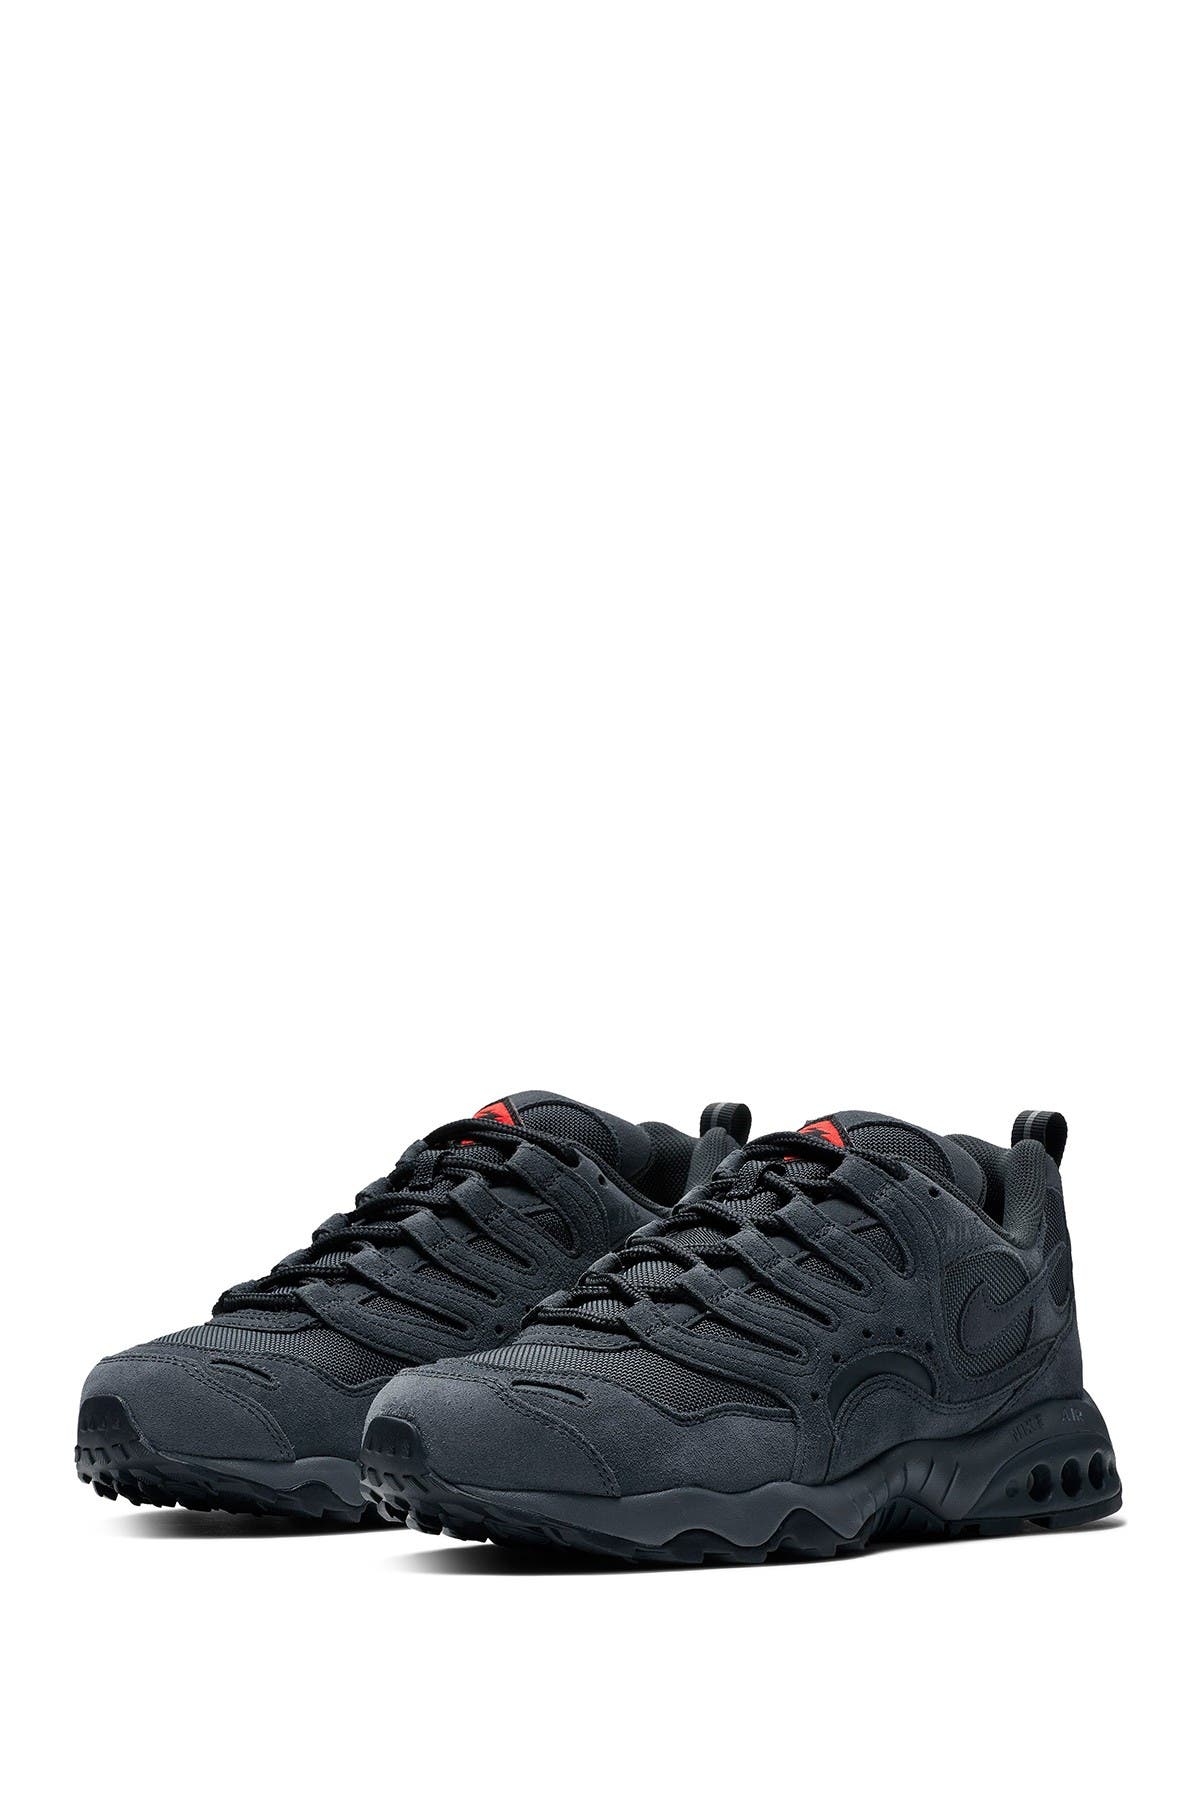 Nike | Air Terra Humara 18 LTR Sneaker 